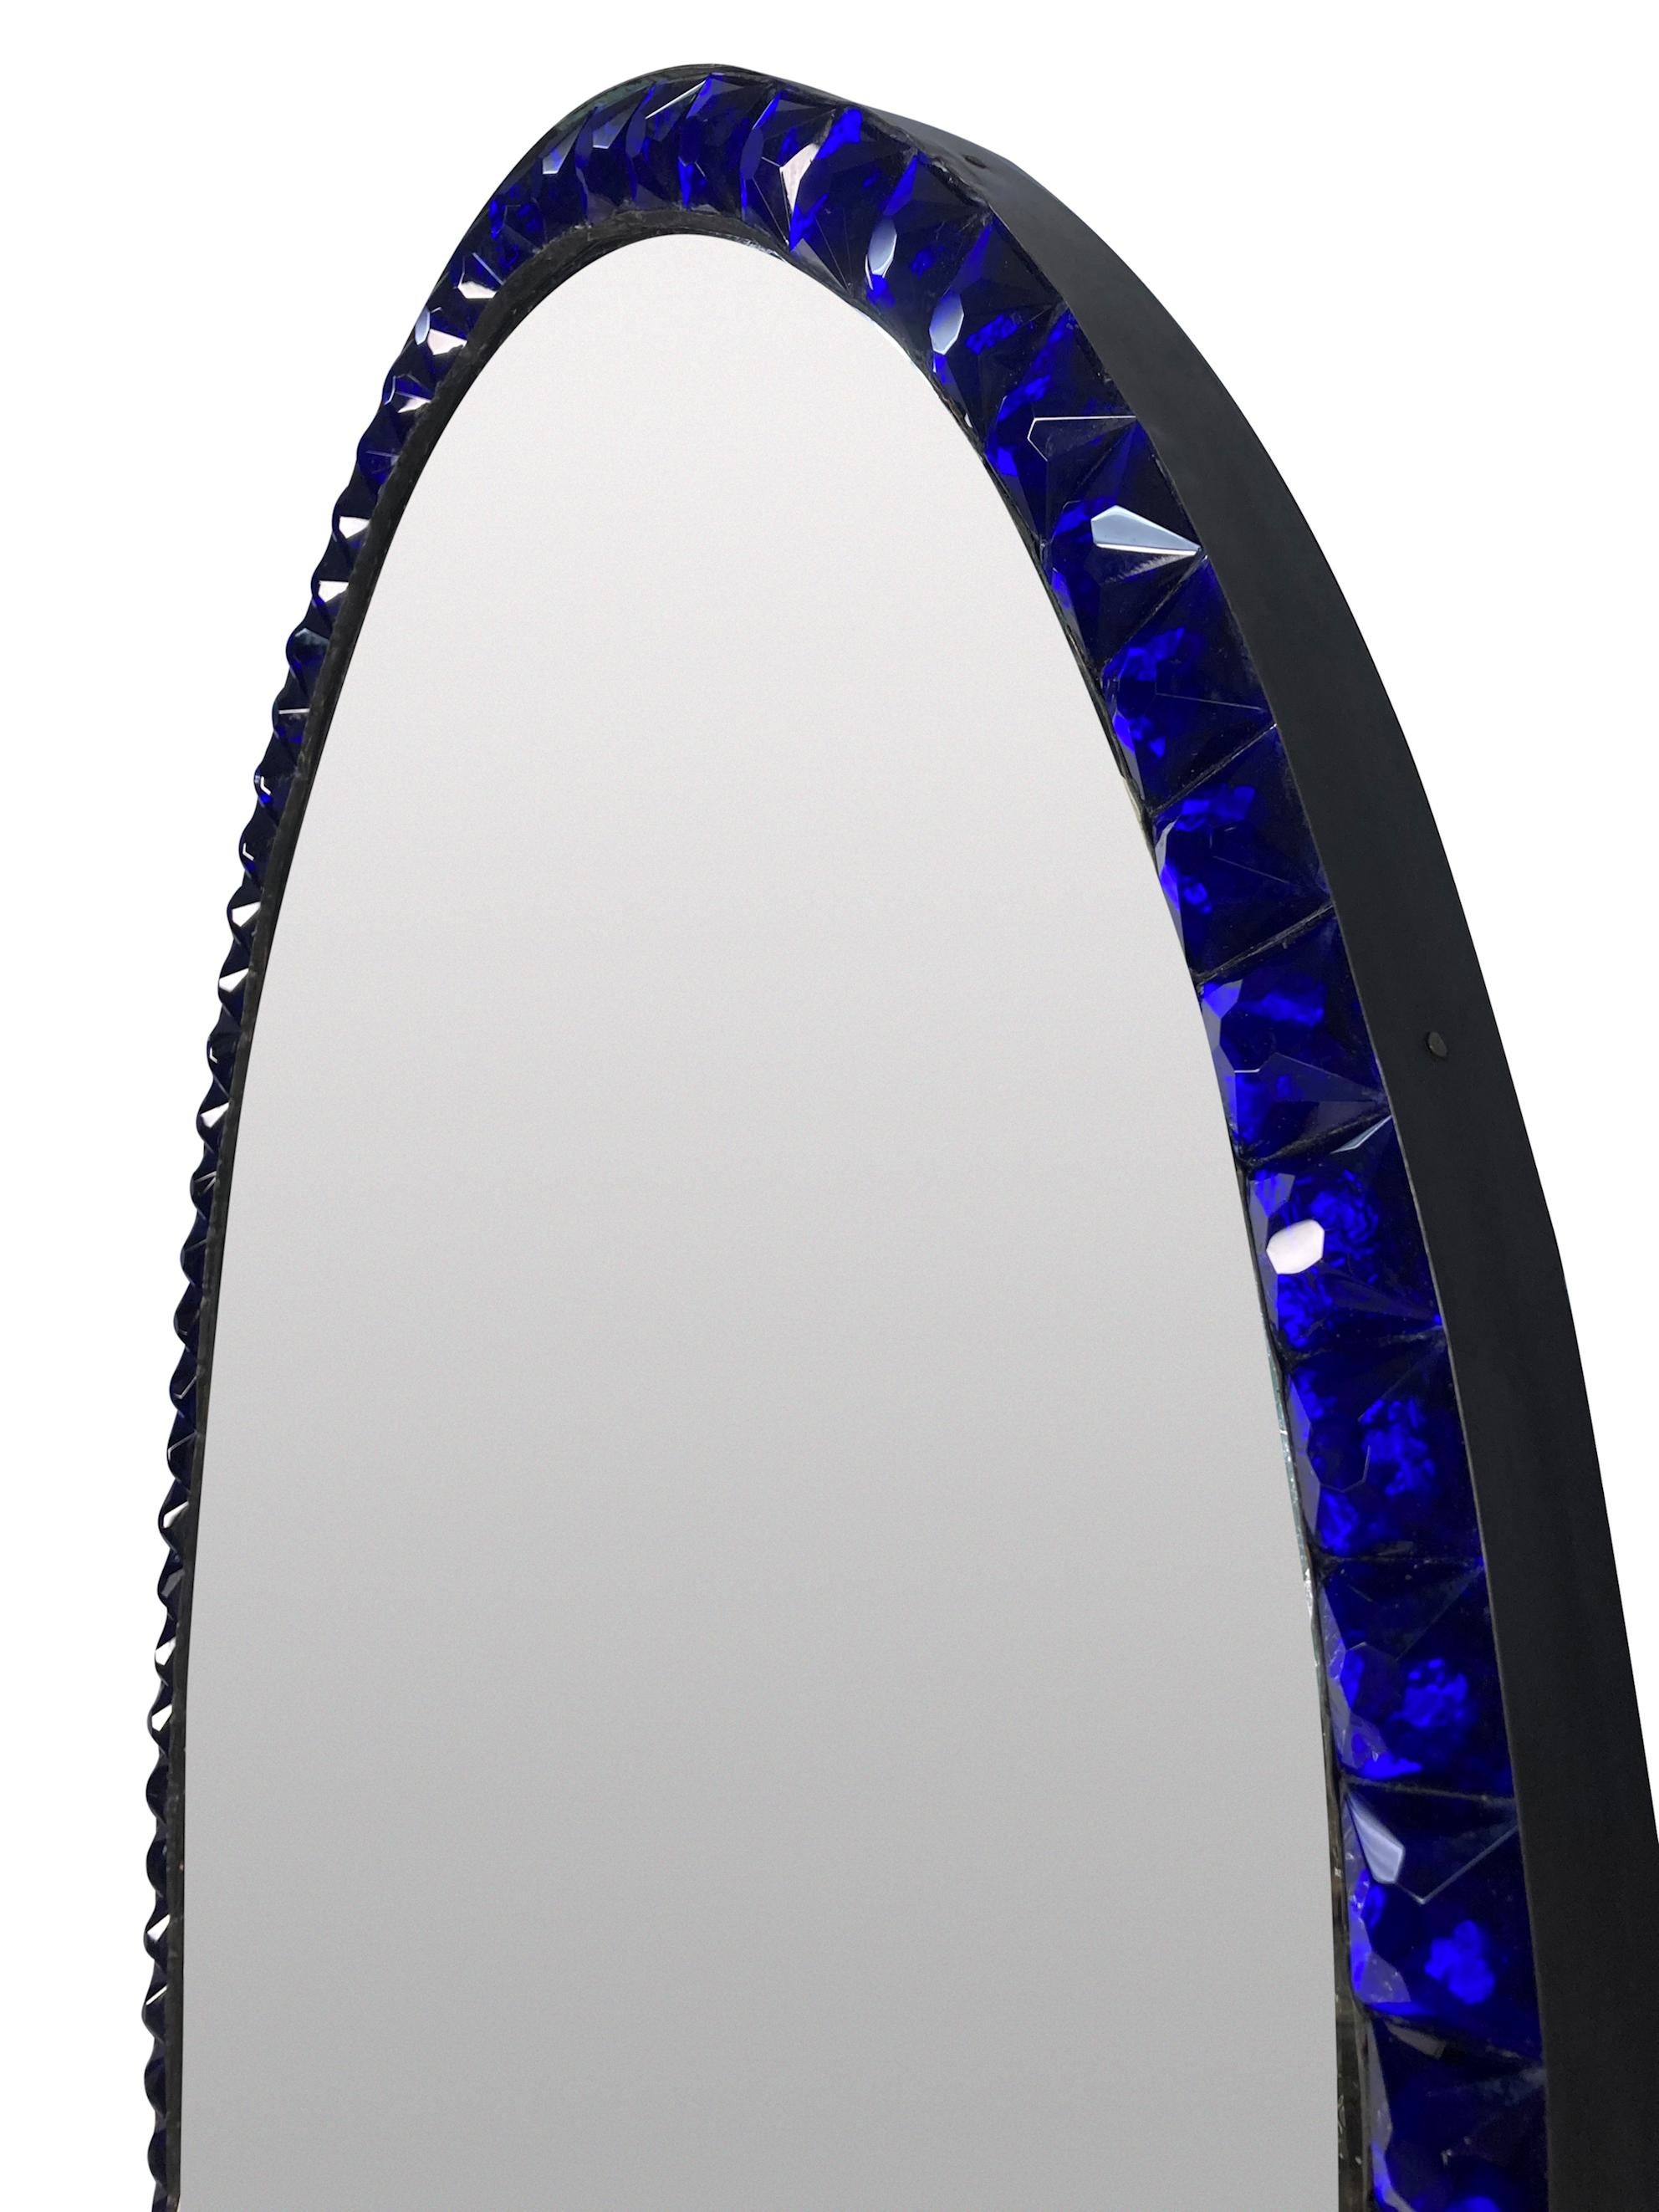 Miroir irlandais de style George III, de bonne qualité, avec une plaque de miroir en faux verre au mercure épinglée dans un cadre en cuivre patiné, bordée de clous à facettes en verre bleu cobalt, selon la méthode traditionnelle du XVIIIe siècle.